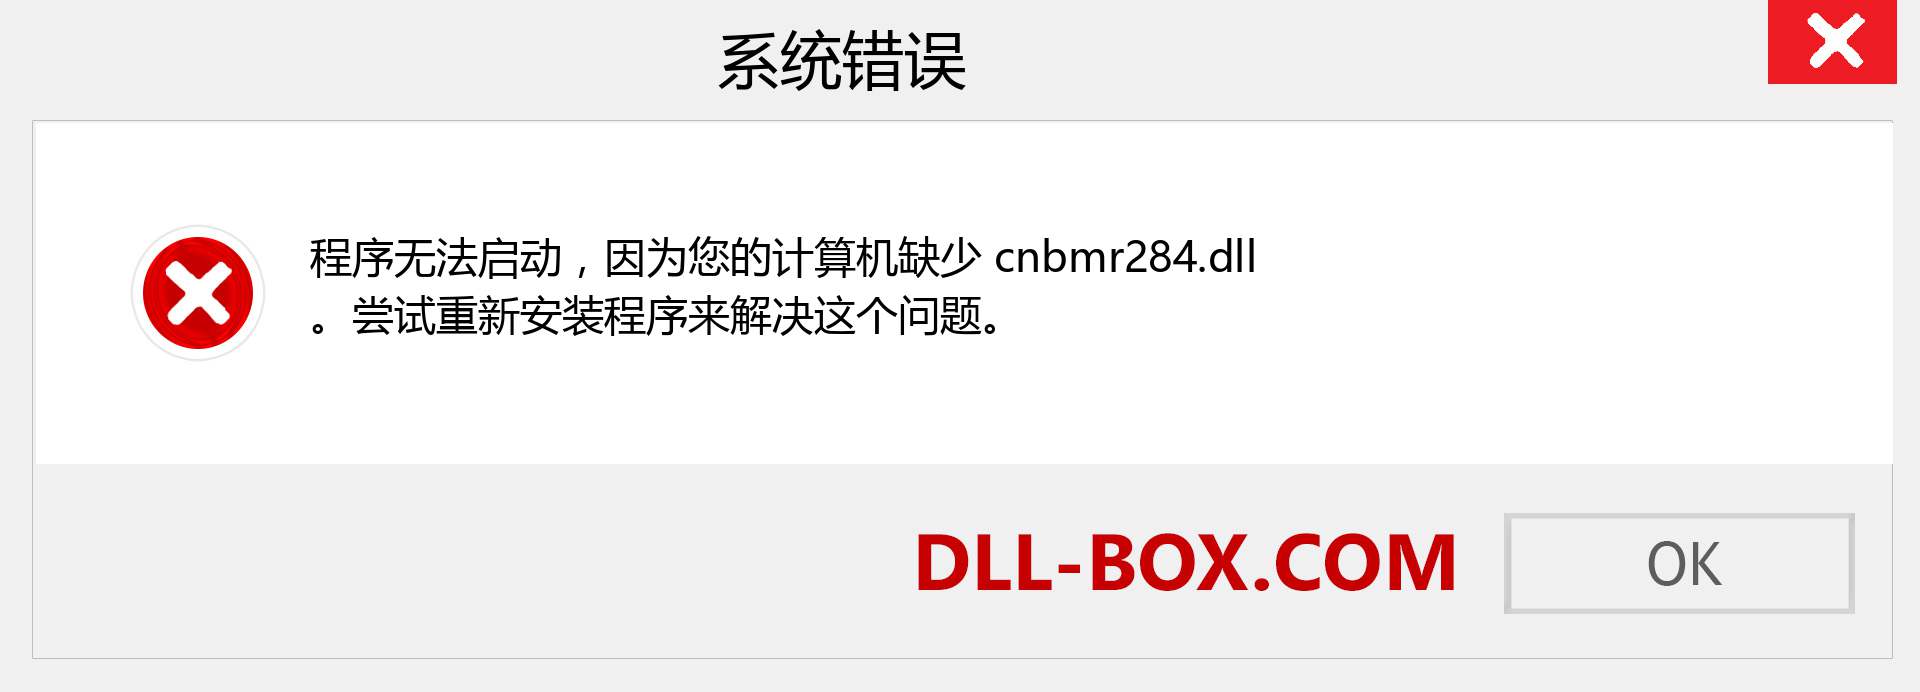 cnbmr284.dll 文件丢失？。 适用于 Windows 7、8、10 的下载 - 修复 Windows、照片、图像上的 cnbmr284 dll 丢失错误